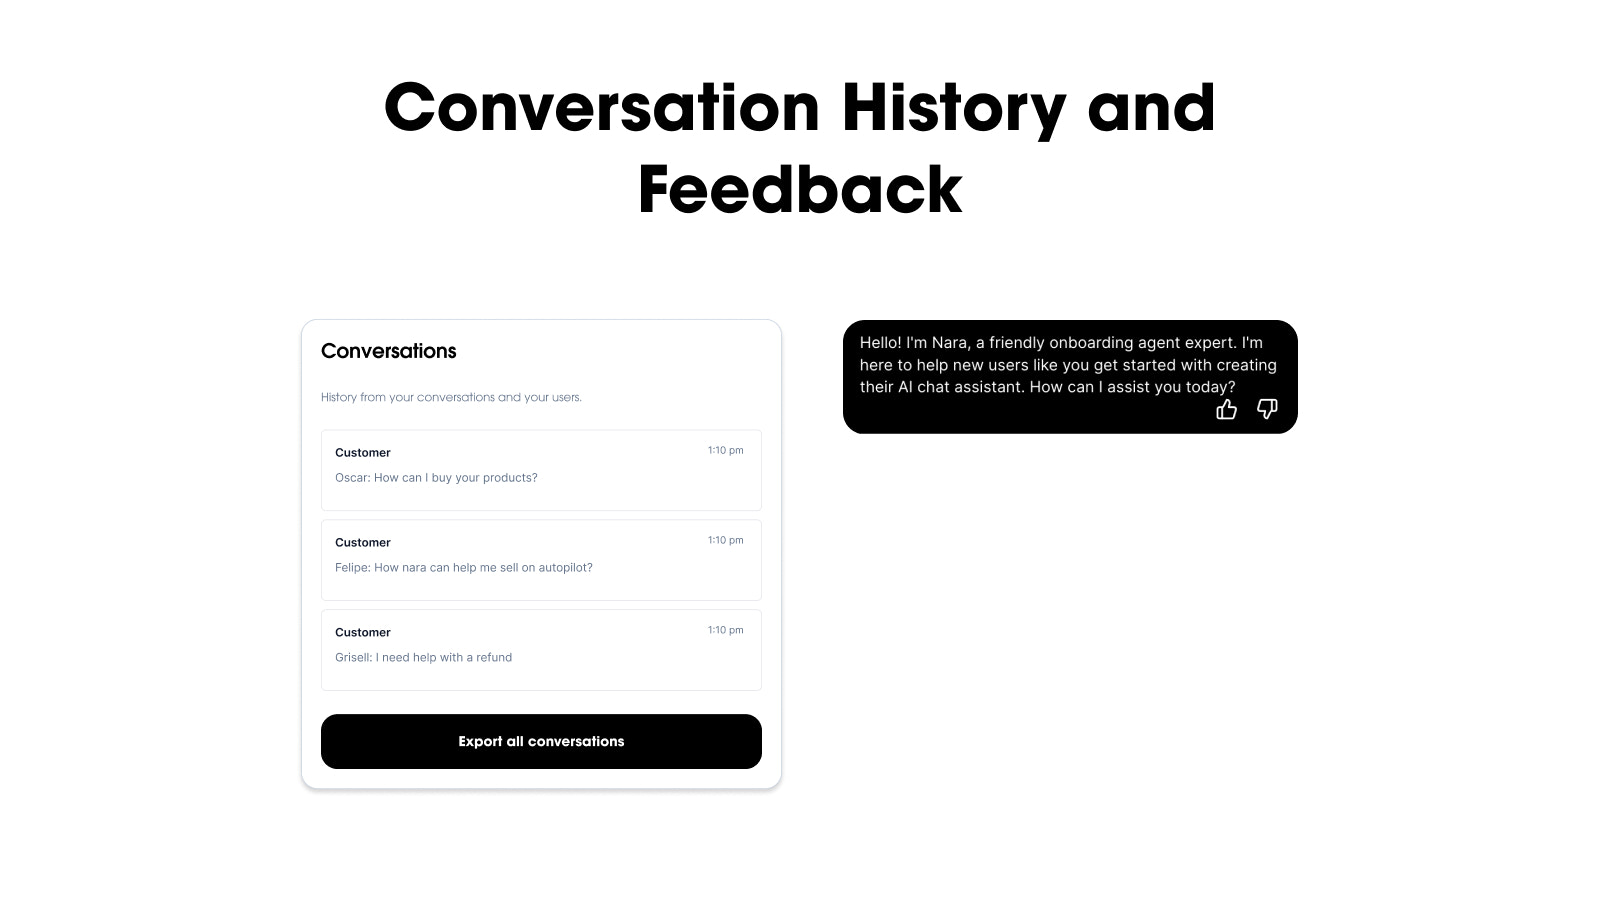 Image de l'historique des conversations et de la fonctionnalité de feedback